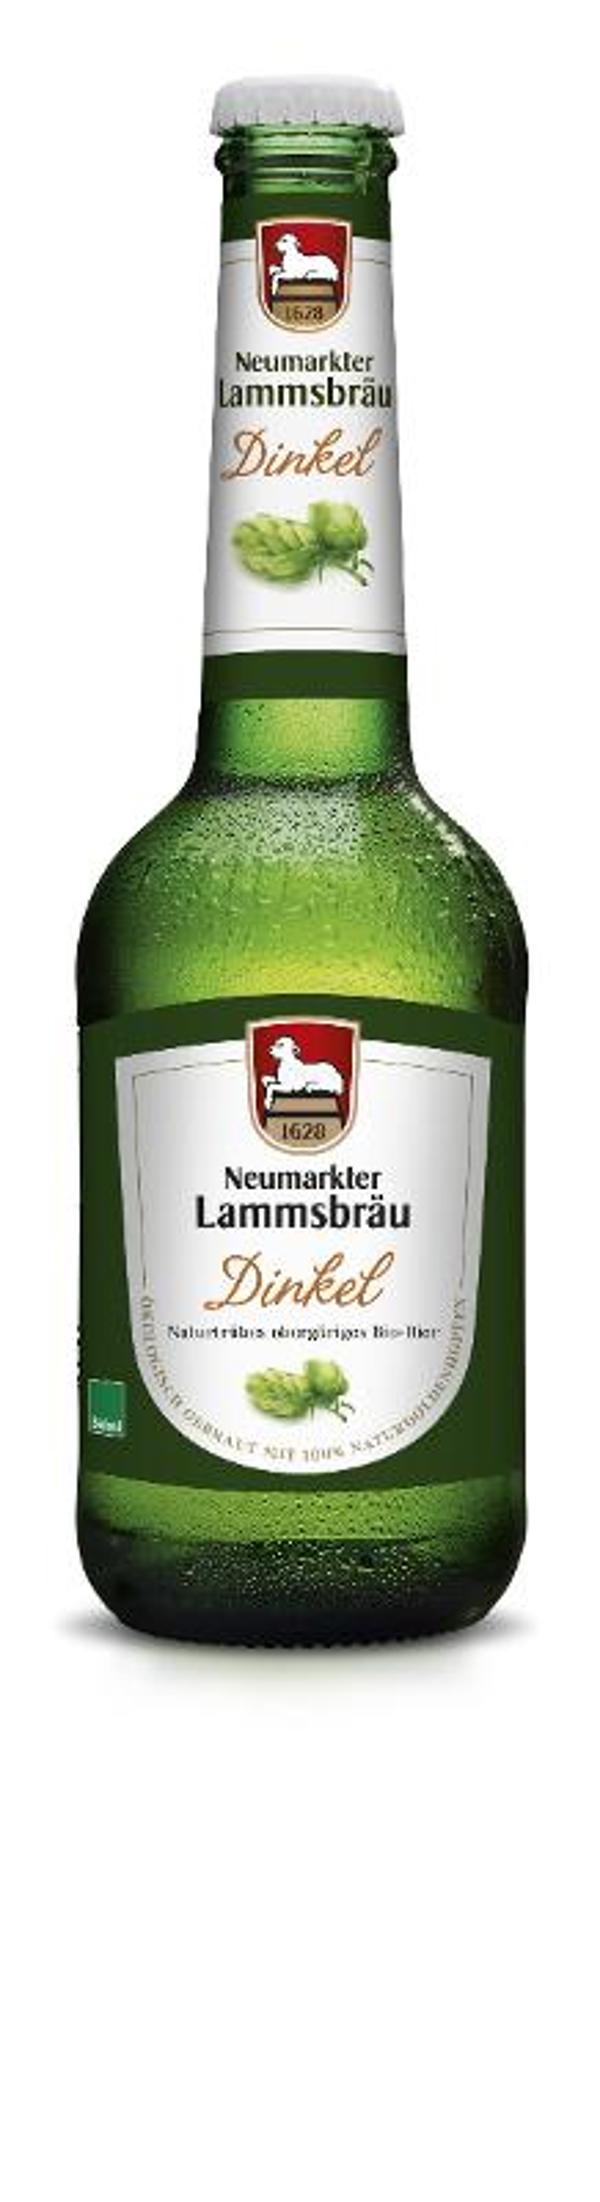 Produktfoto zu Lammsbräu Dinkel Bier Kasten